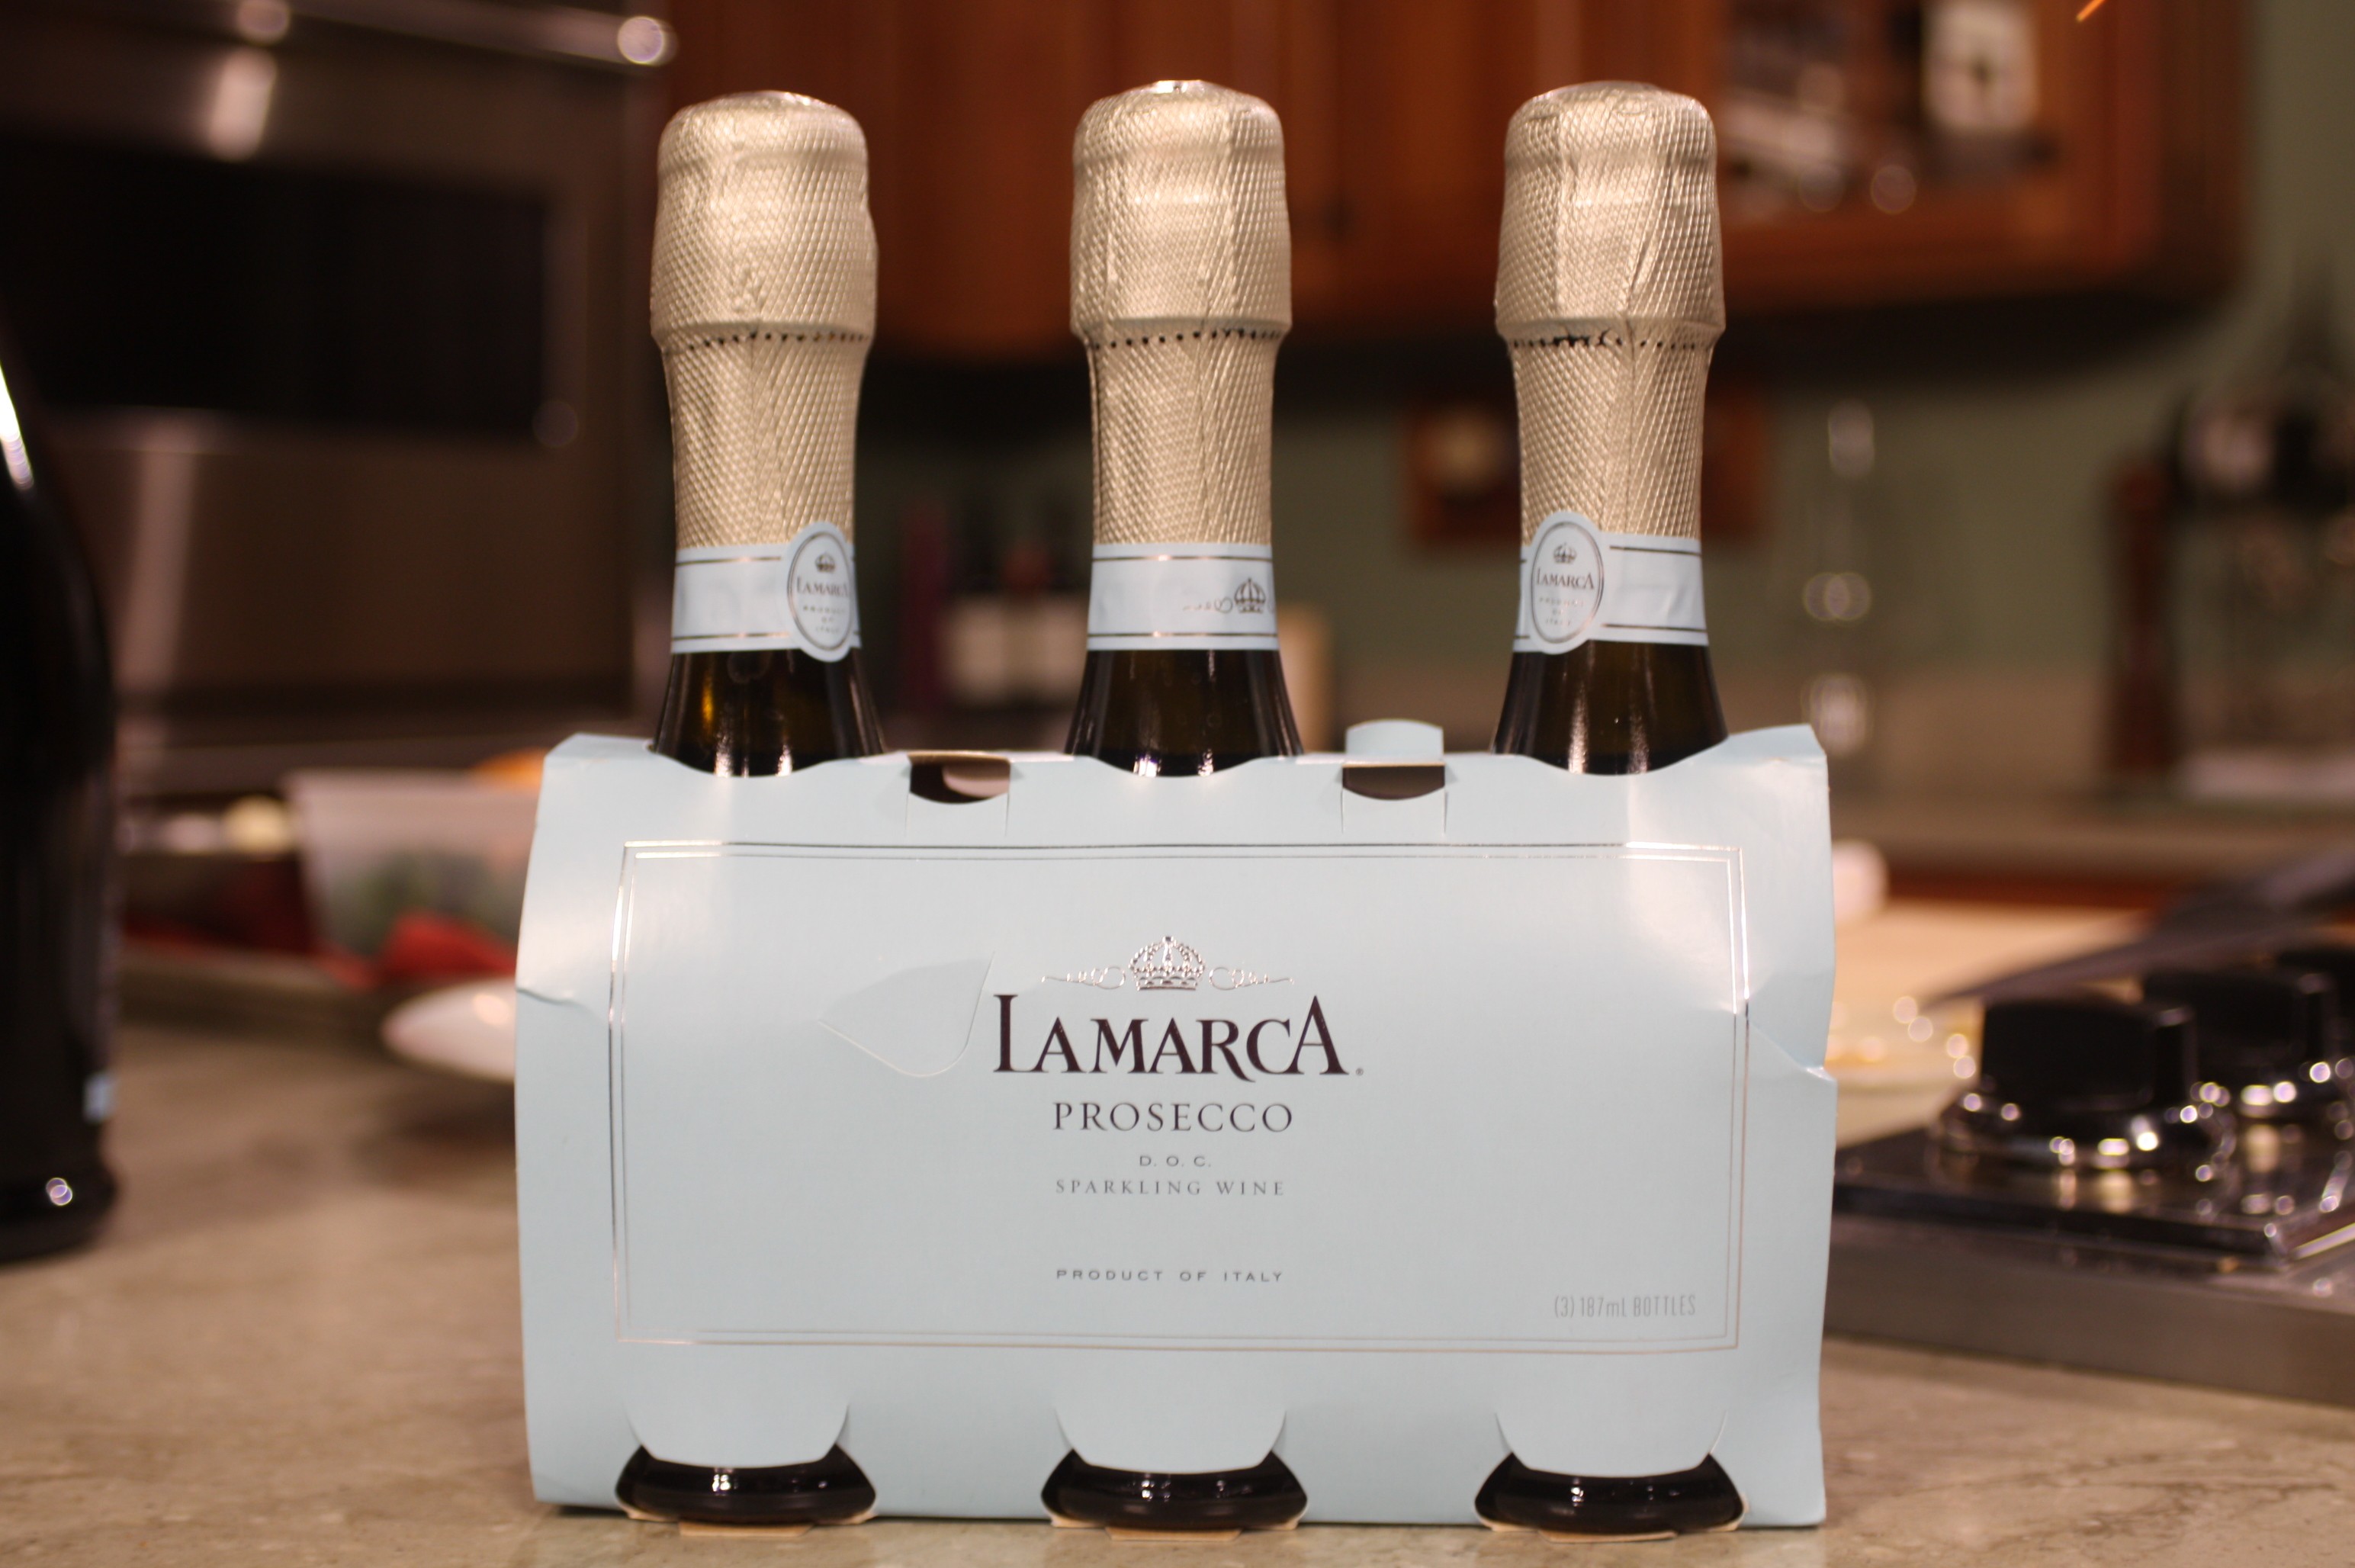 Lamarca Prosecco Sparkling Wine